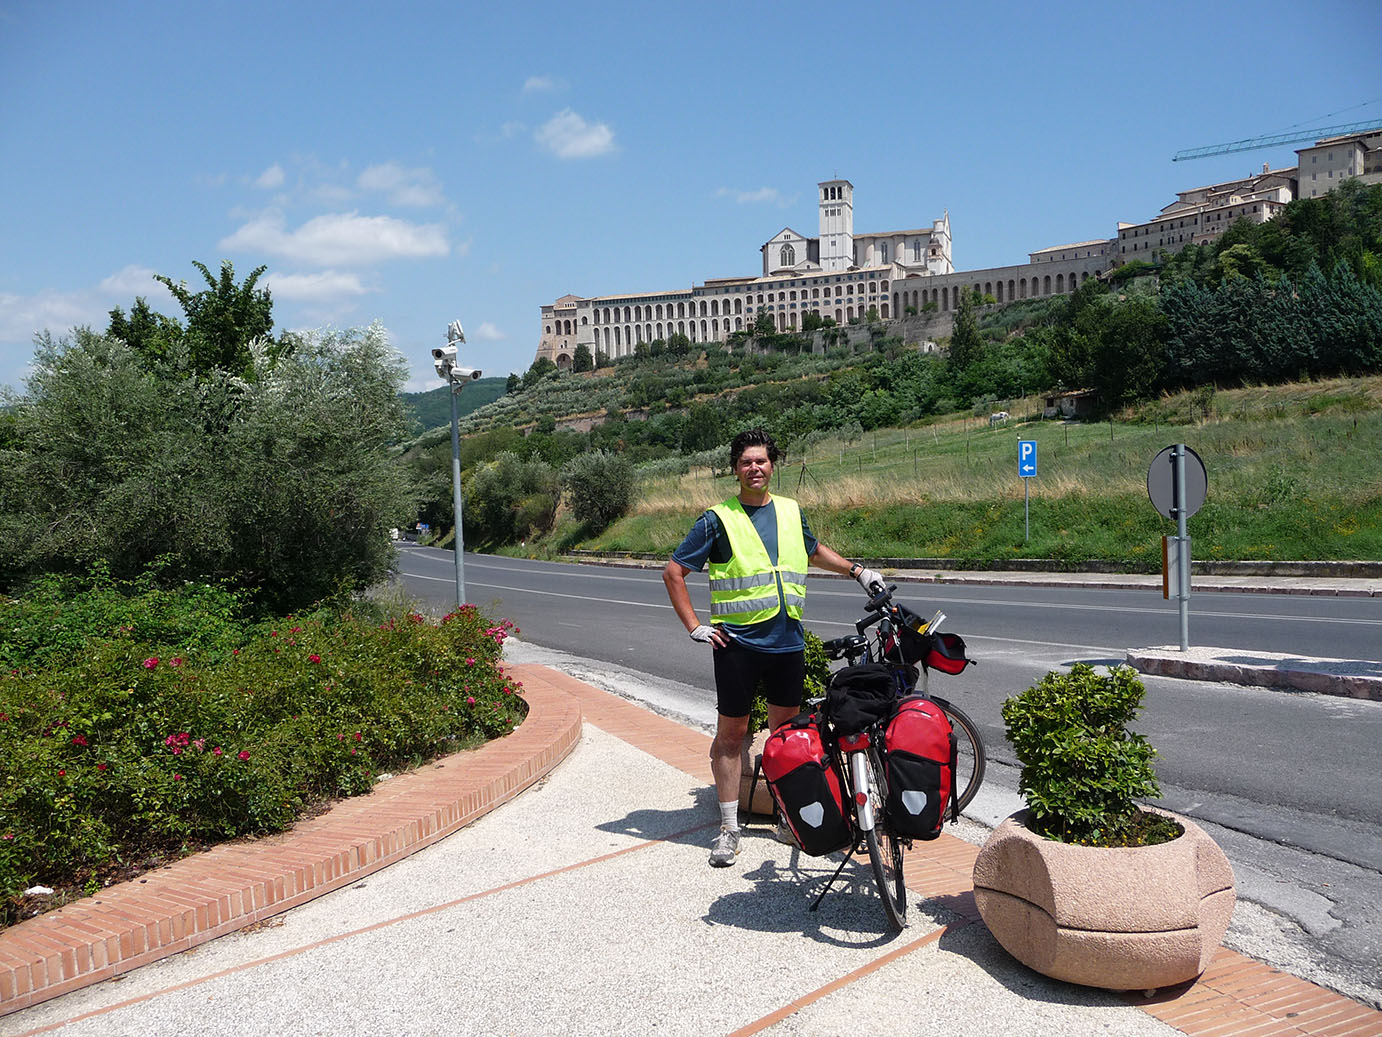 Juli 2009: Mit dem Fahrrad von St. Ingbert nach Rom. Zwischenstopp in Assisi